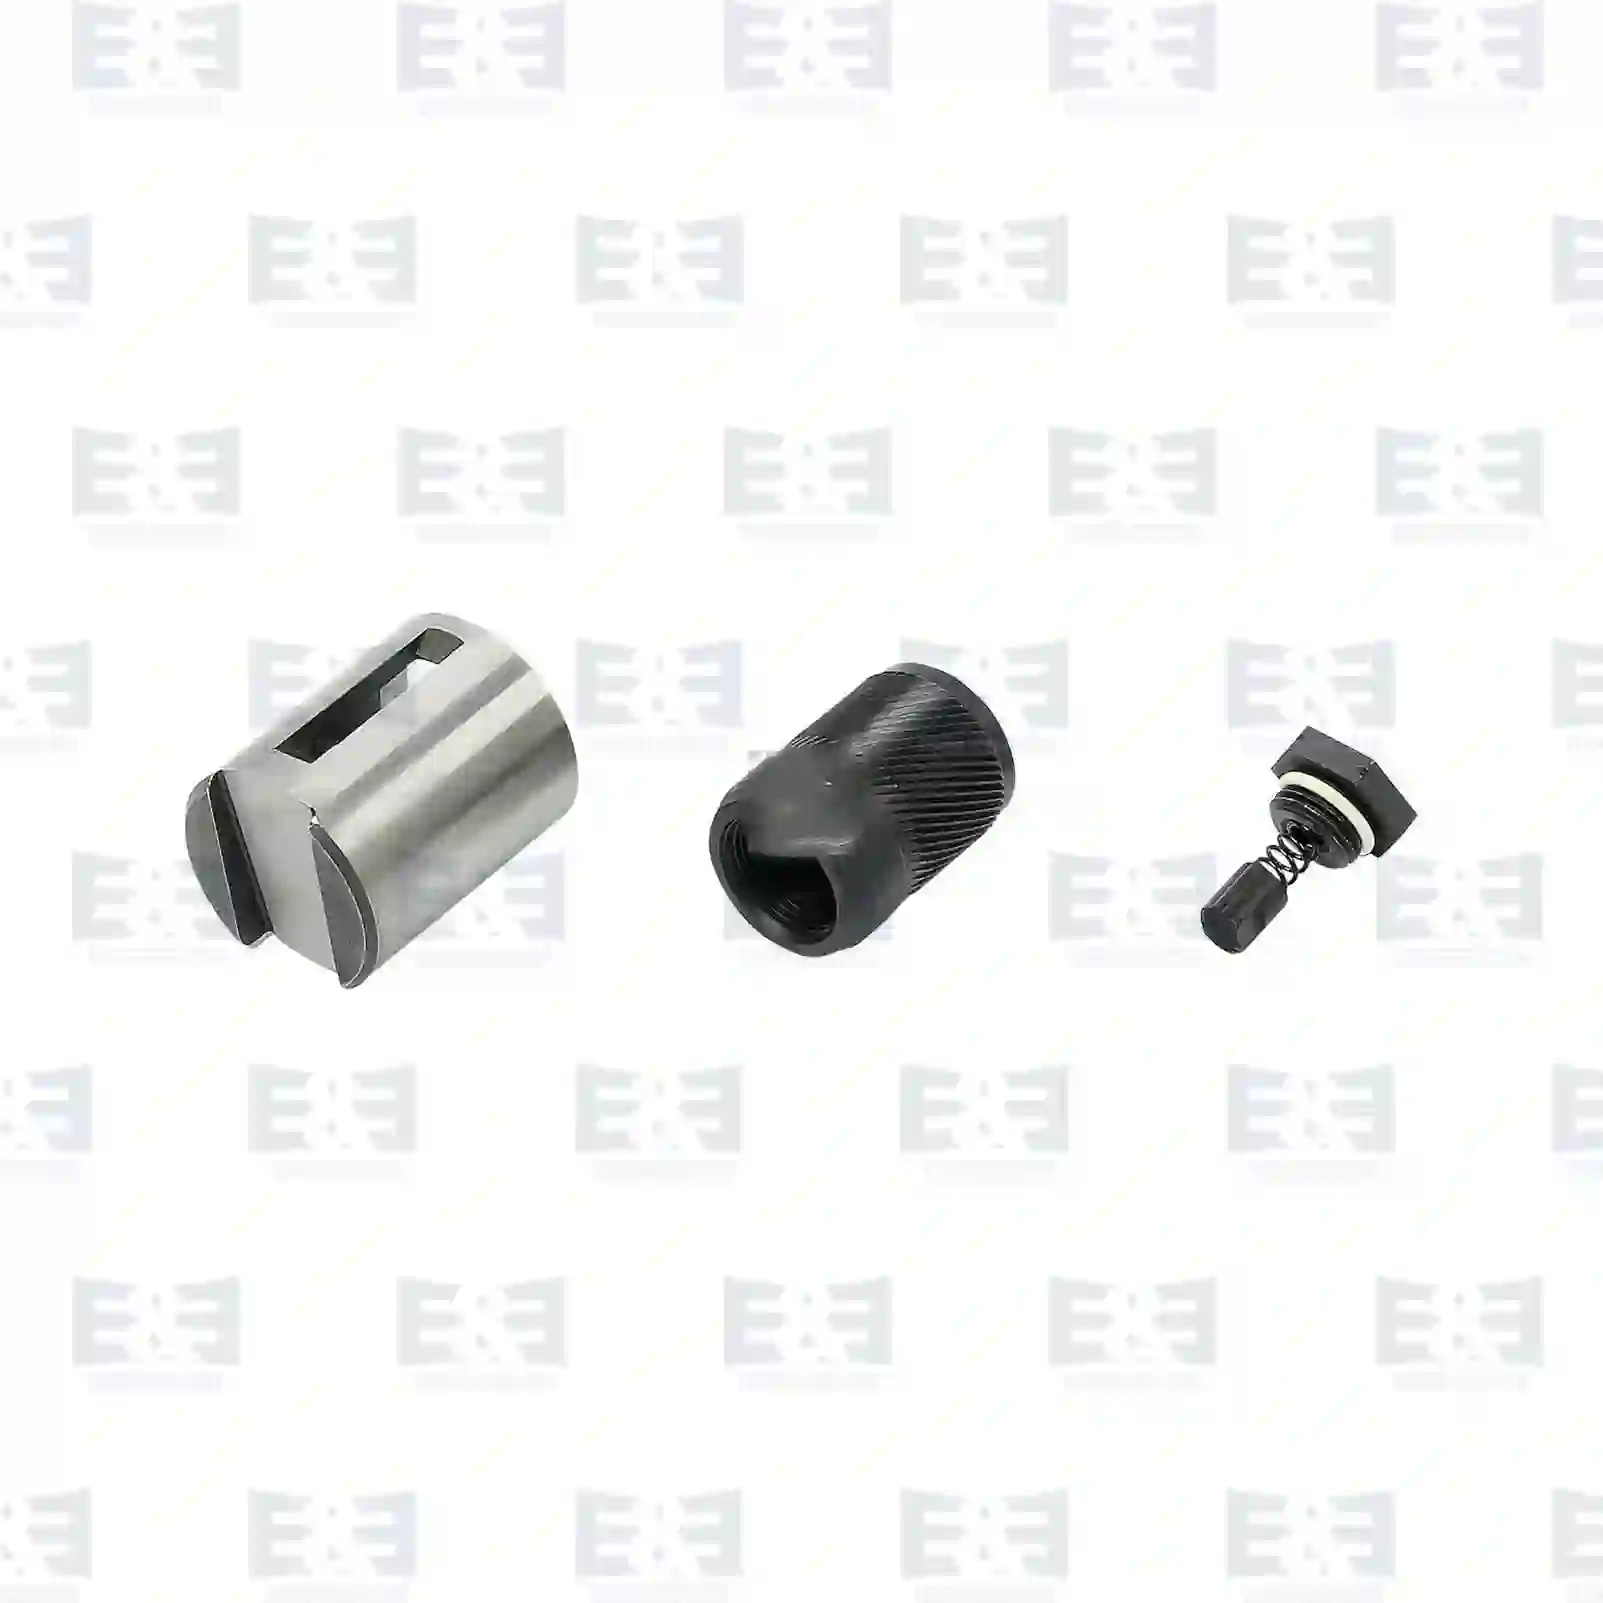  Repair kit || E&E Truck Spare Parts | Truck Spare Parts, Auotomotive Spare Parts